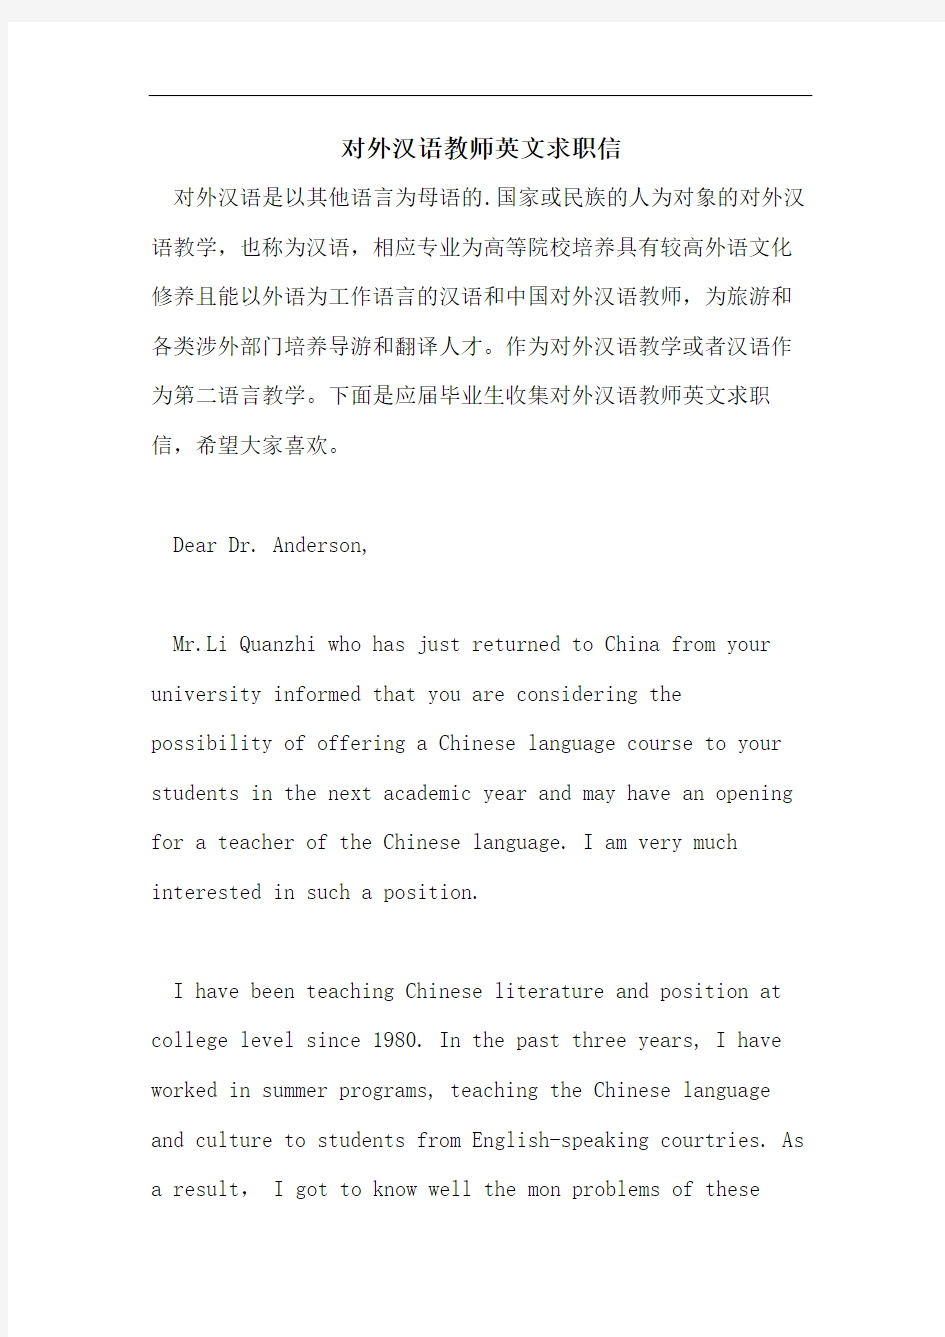 对外汉语教师英文求职信